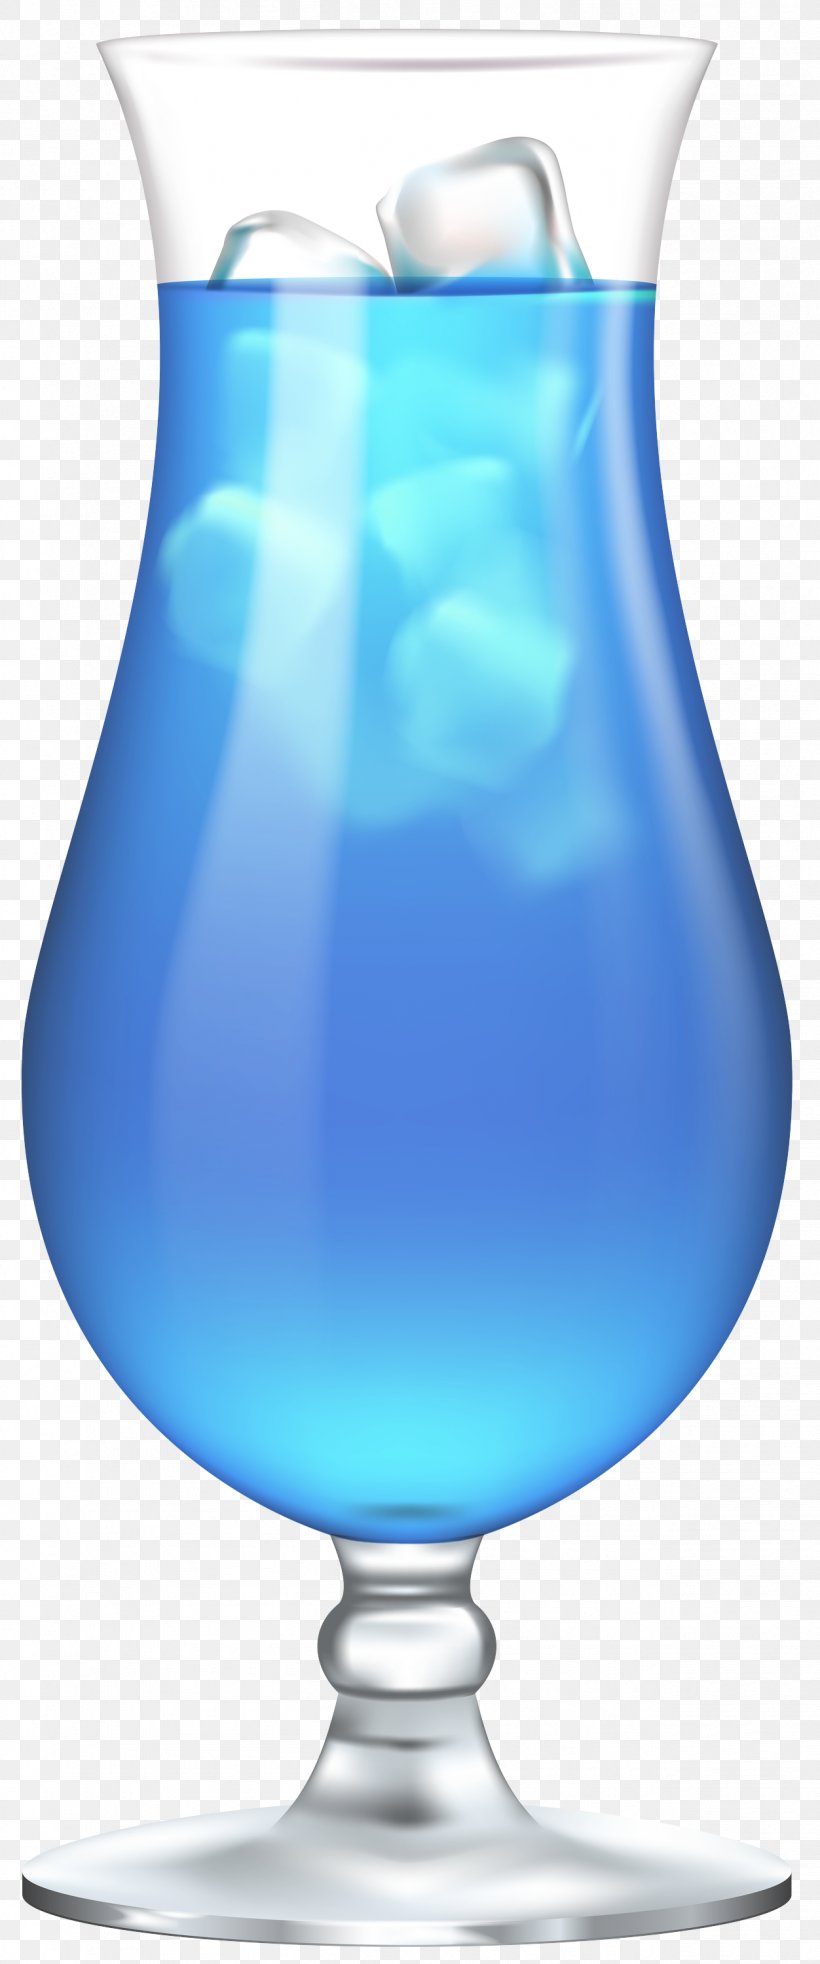 Blue Aqua Blue Hawaii Hpnotiq Drink, PNG, 1252x3000px, Blue, Aqua, Blue Hawaii, Blue Lagoon, Distilled Beverage Download Free